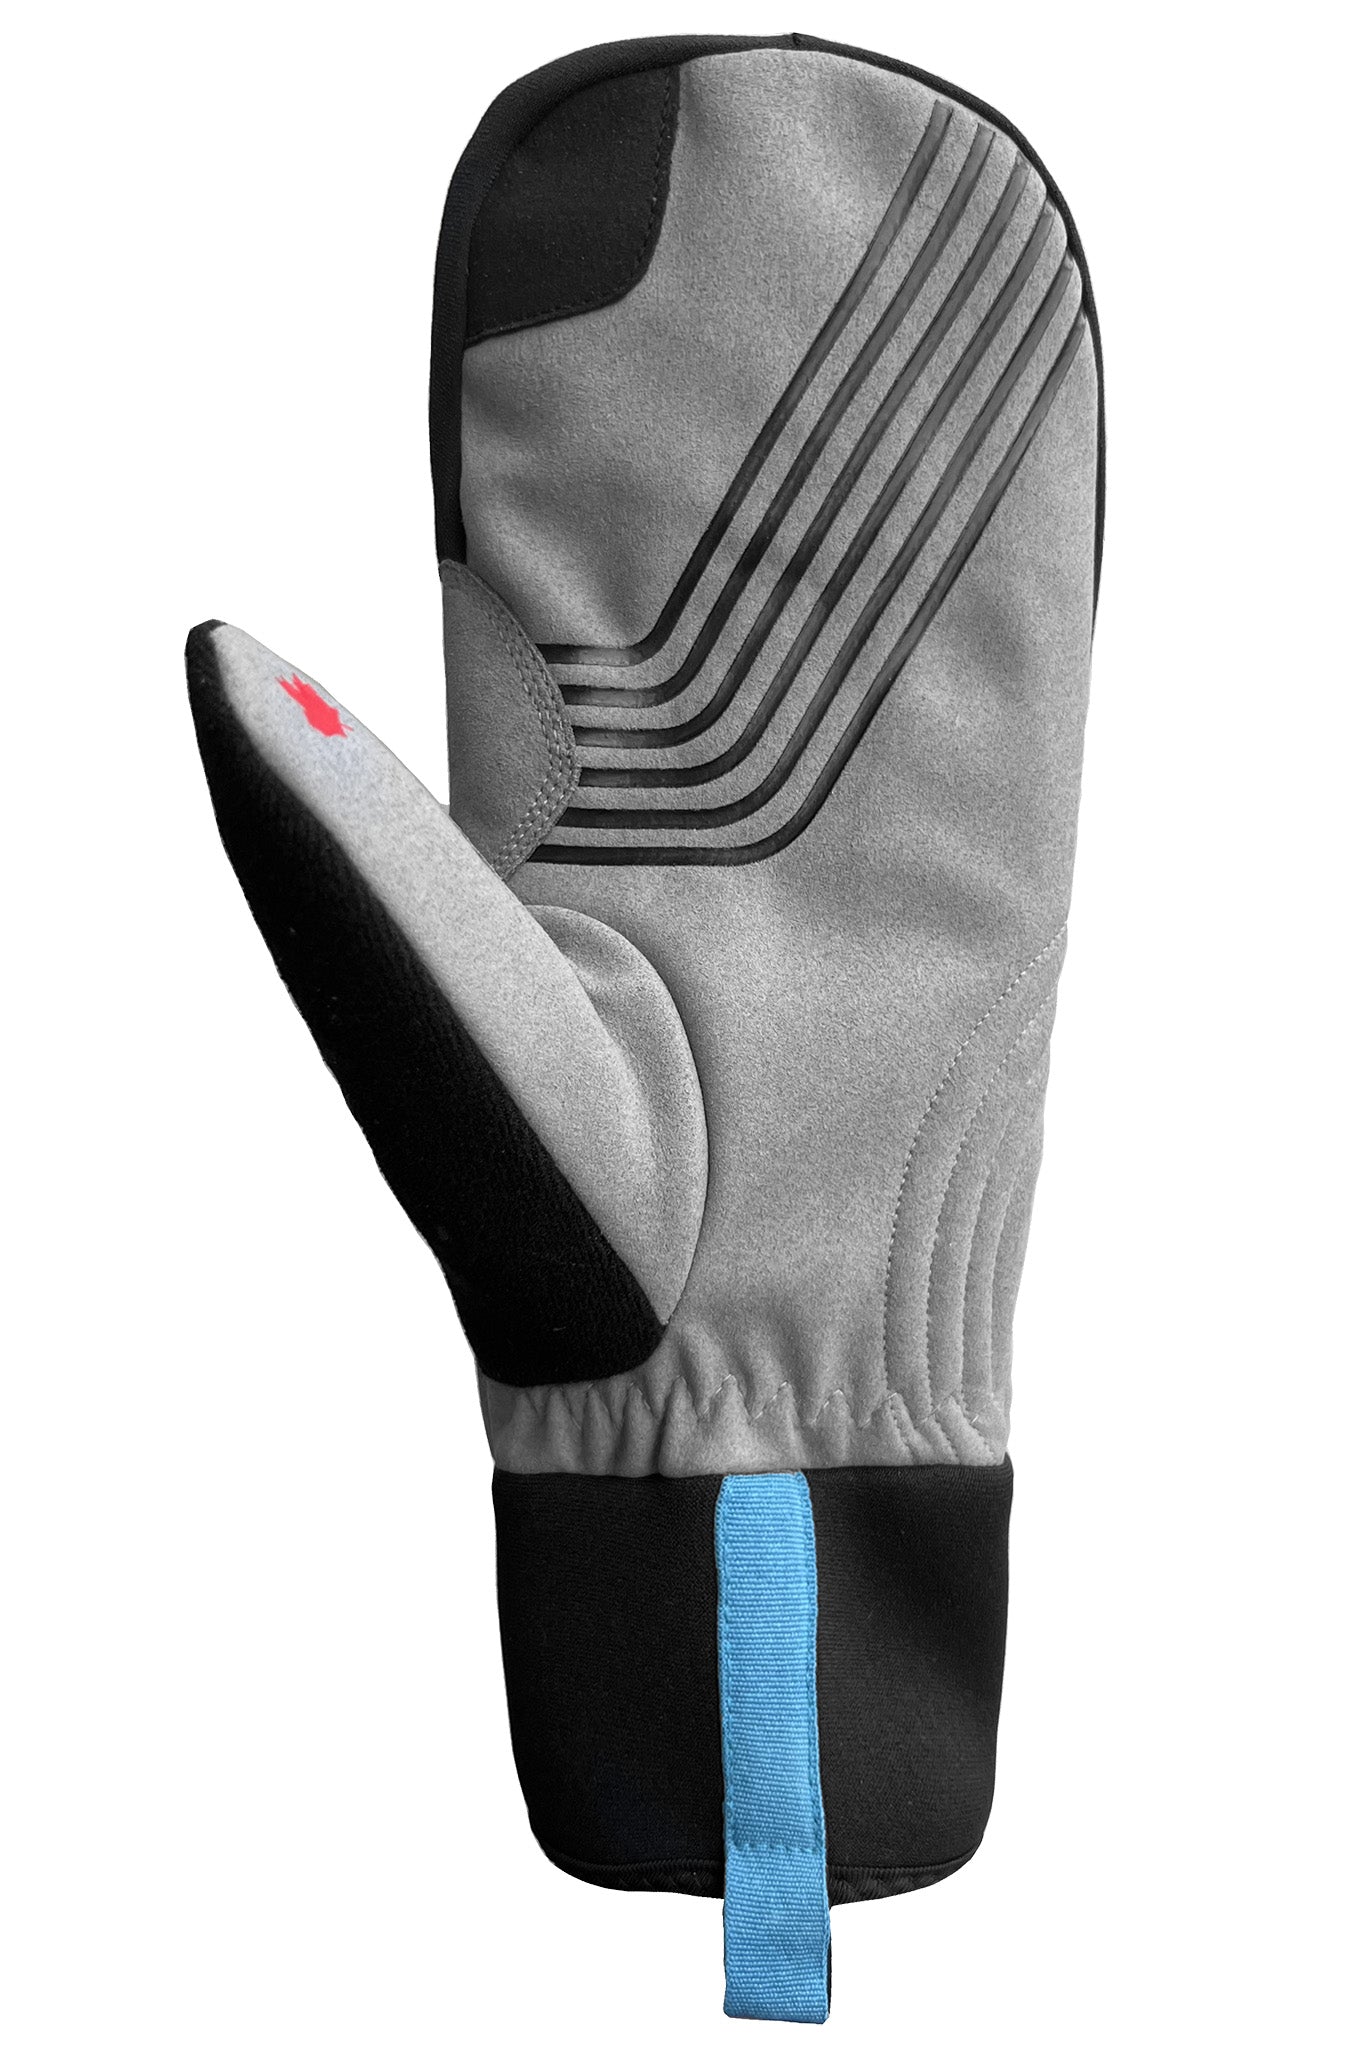 Stellar 2.0 Mitts - Men-Glove-Auclair Sports-Auclair Sports